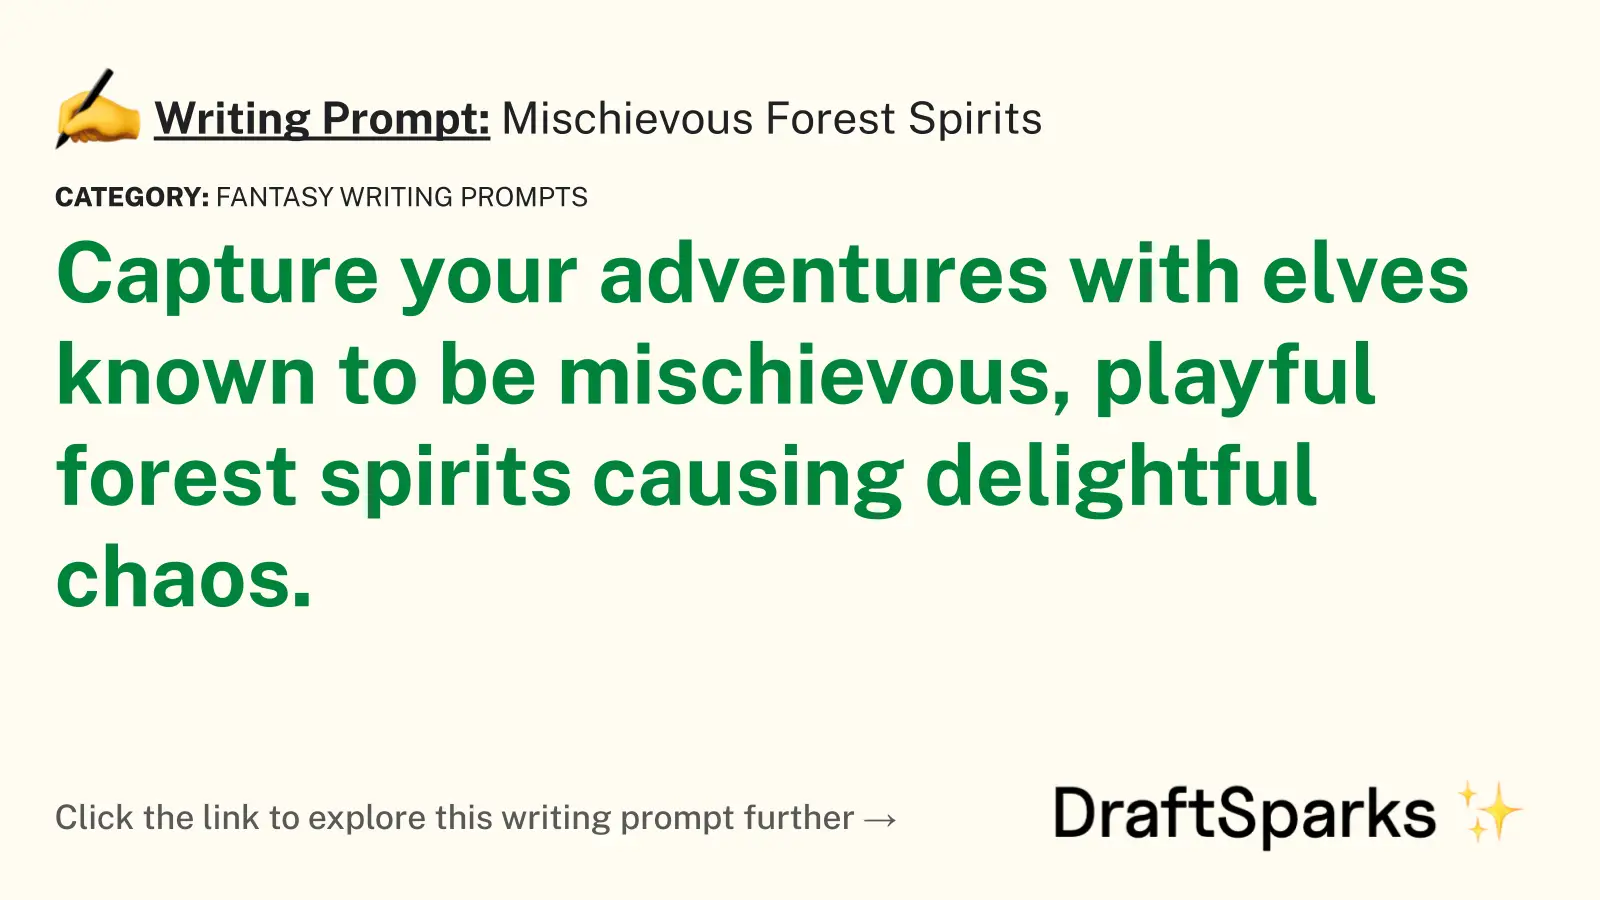 Mischievous Forest Spirits